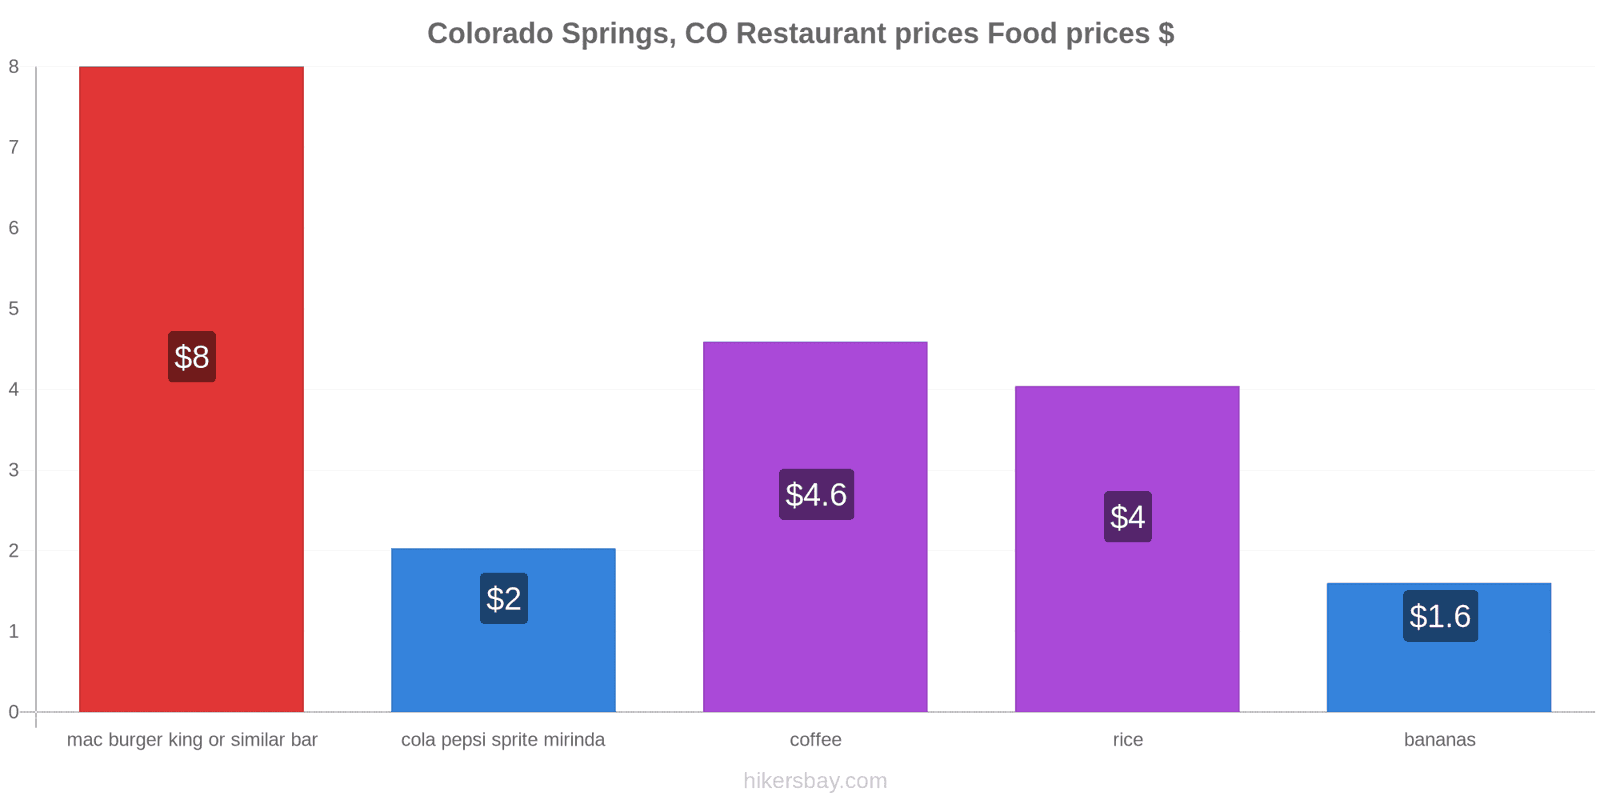 Colorado Springs, CO price changes hikersbay.com